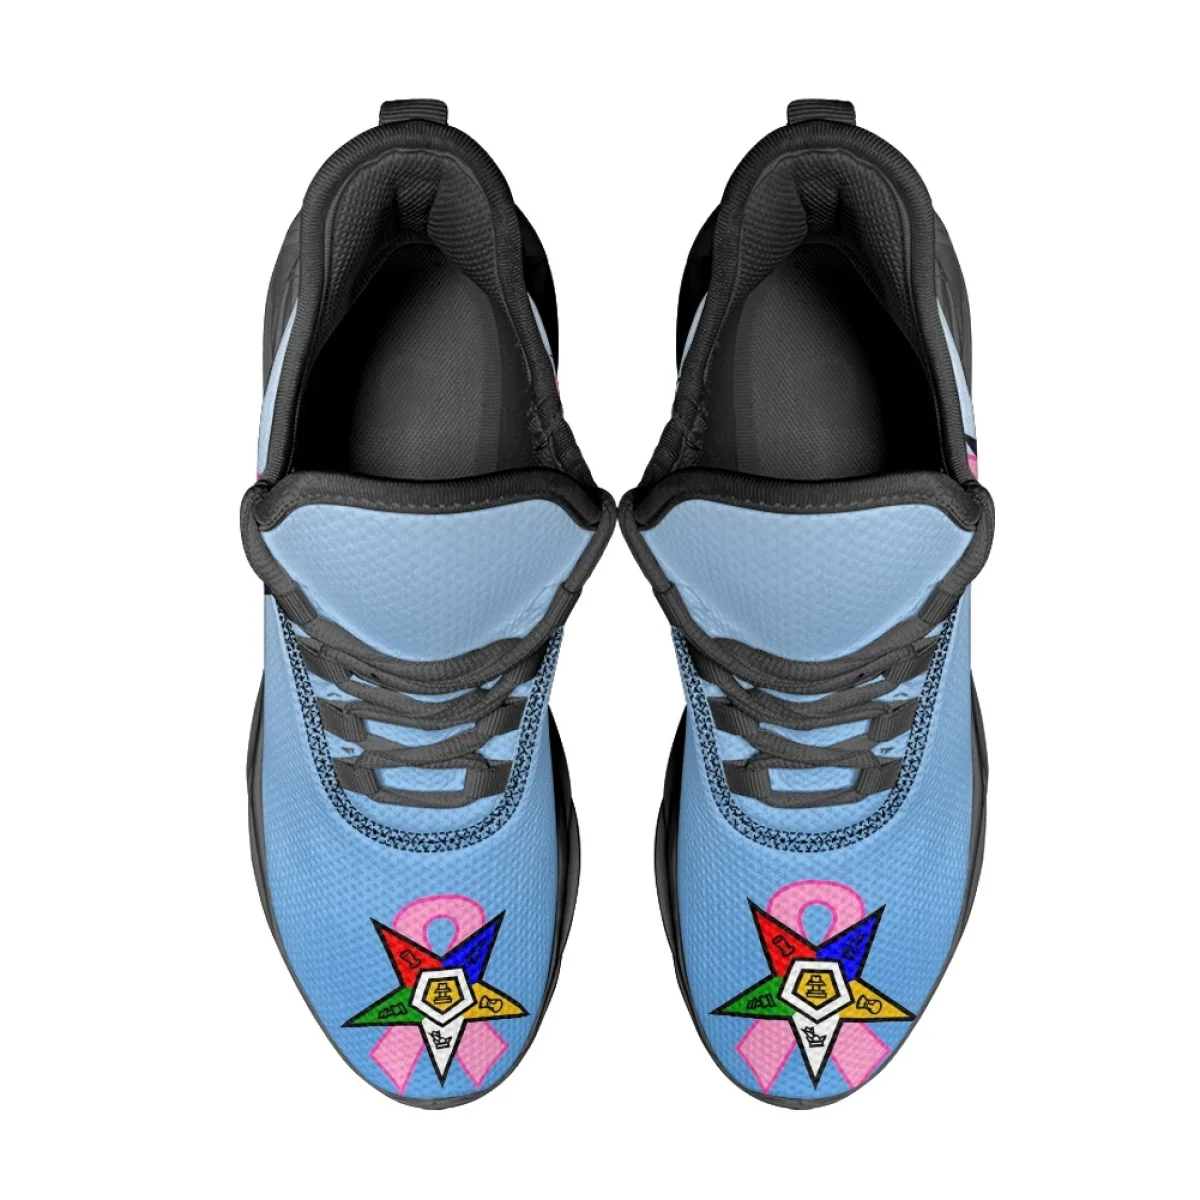 Födémgerenda sneakersfor Nők hotsale Görög Egyetemi leányszövetség Rendjel bel Lá Napkeleti Sztár nyomtatás kültéri sportok csipkével Fel Futóverseny cipők Vulkanizált Félcipő